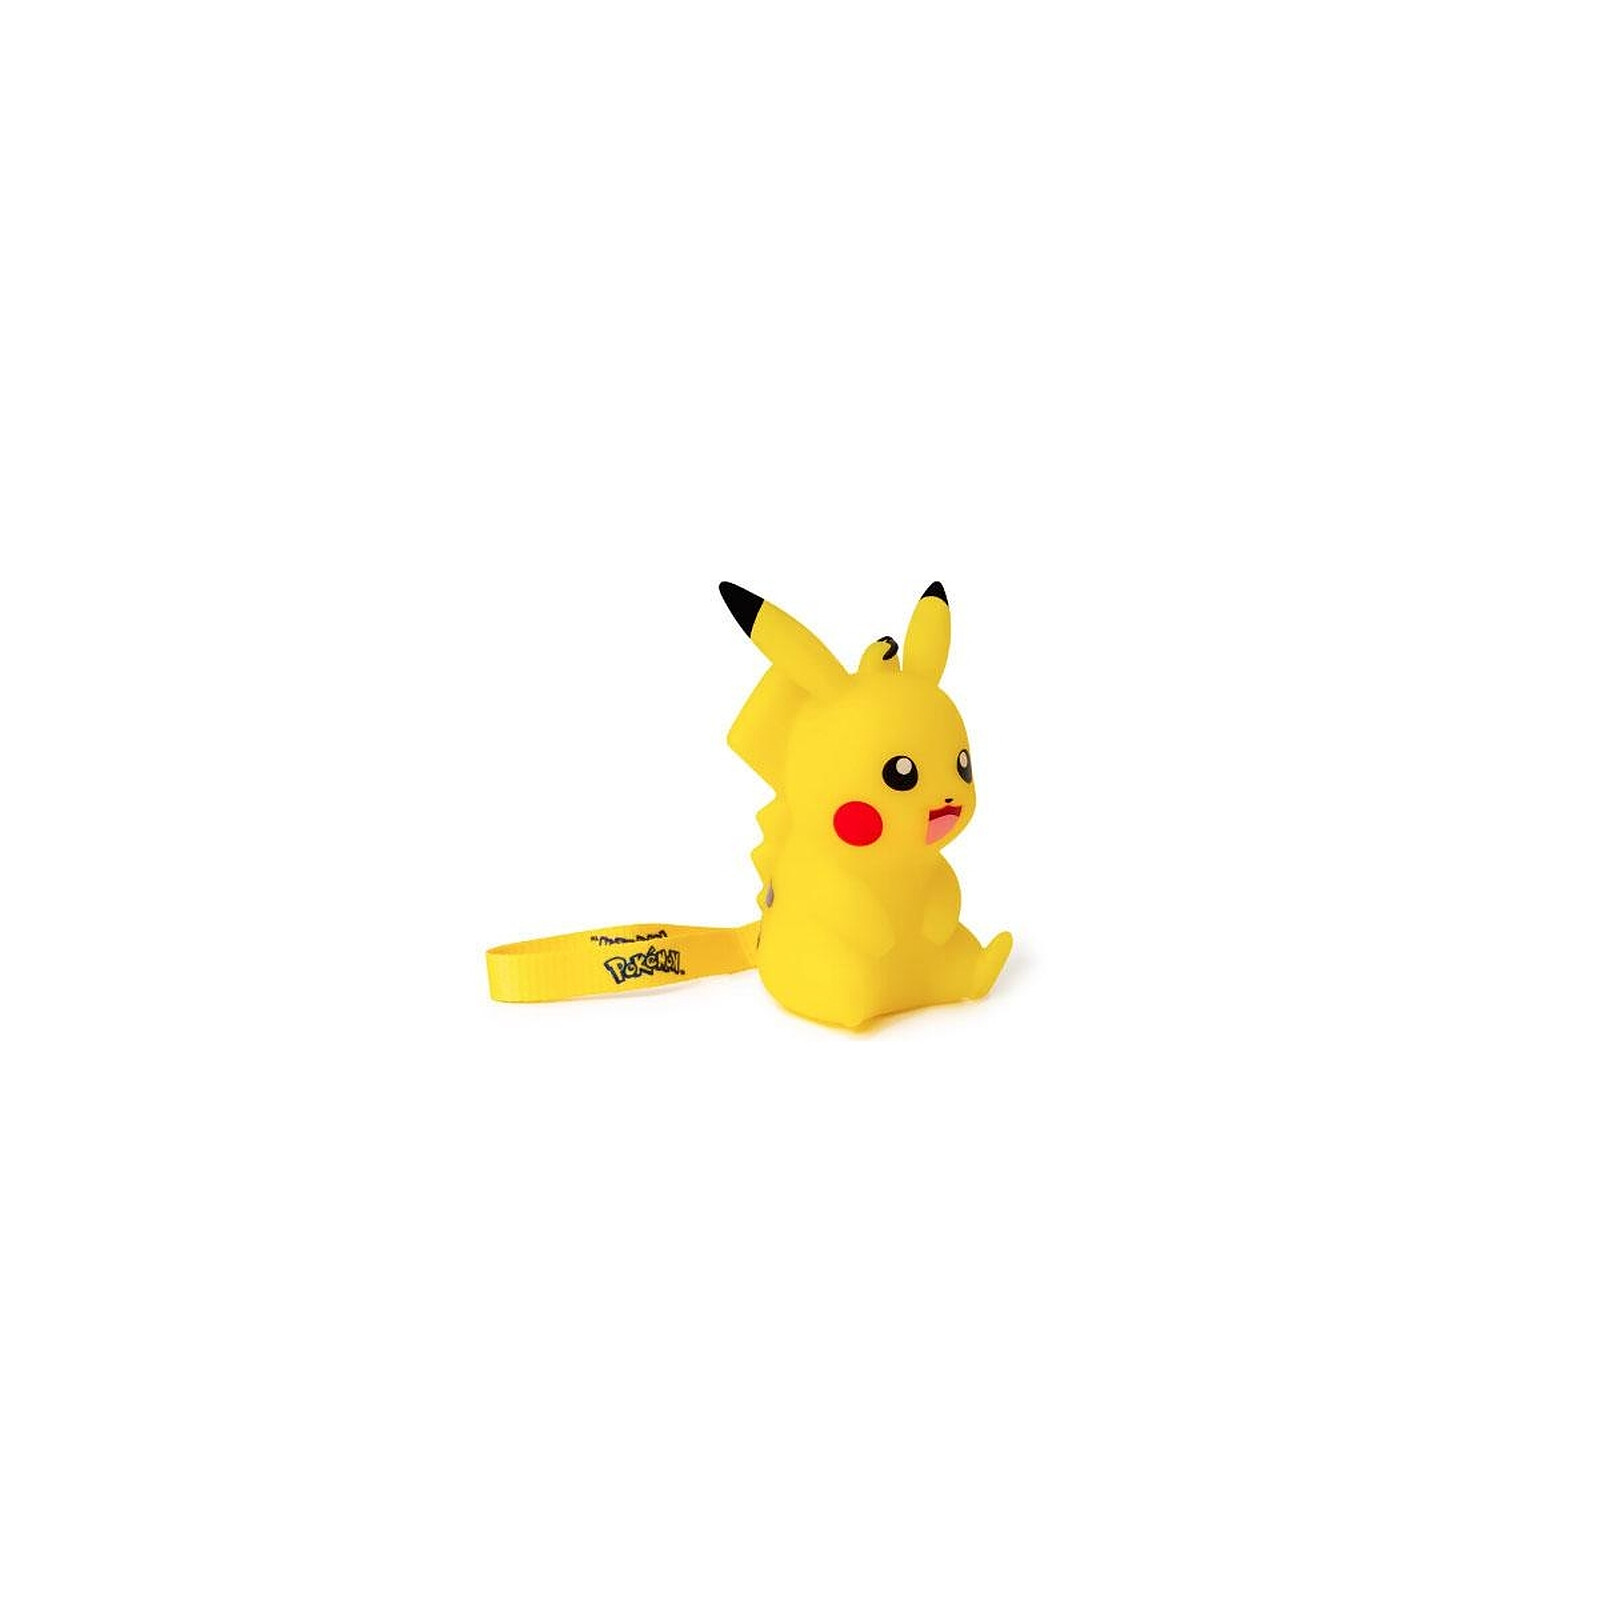 Pokémon - Figurine lumineuse Pikachu 9 cm - Figurines - LDLC